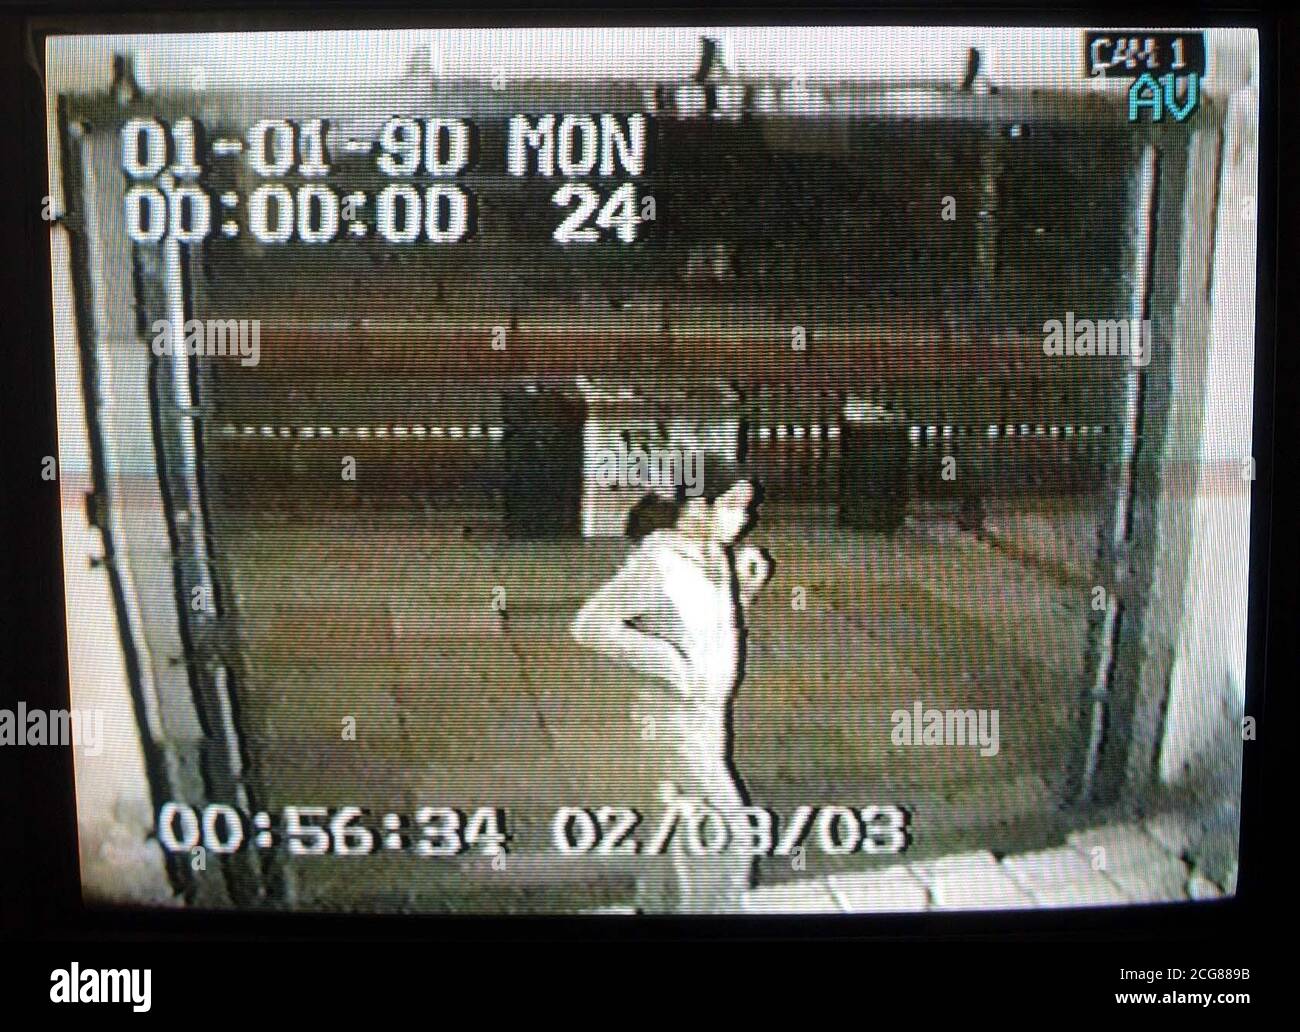 Ein Standbild aus CCTV-Aufnahmen von der U-Bahn-Station Greenford, aufgenommen in den frühen Morgenstunden des 2. September, das zeigt, was die Polizei glaubt, ist Asata Budd, 13, die letzten Montag aus Woodford in Essex vermisst wurde. Supt Horsley von der Polizei in Redbridge sagte: "Wir haben keine Beweise, die darauf hindeuten, dass Asata zu Schaden gekommen ist, aber offensichtlich ist ein vermisstes 13-jähriges Mädchen von großer Sorge für uns." Asata wird als ein hellhäutig schwarzes Mädchen beschrieben, 5 Fuß 6 Zoll und schlank, mit hellbraunen Augen und dunkelbraunem schulterlangen Haar, das zurück gebunden ist. Stockfoto